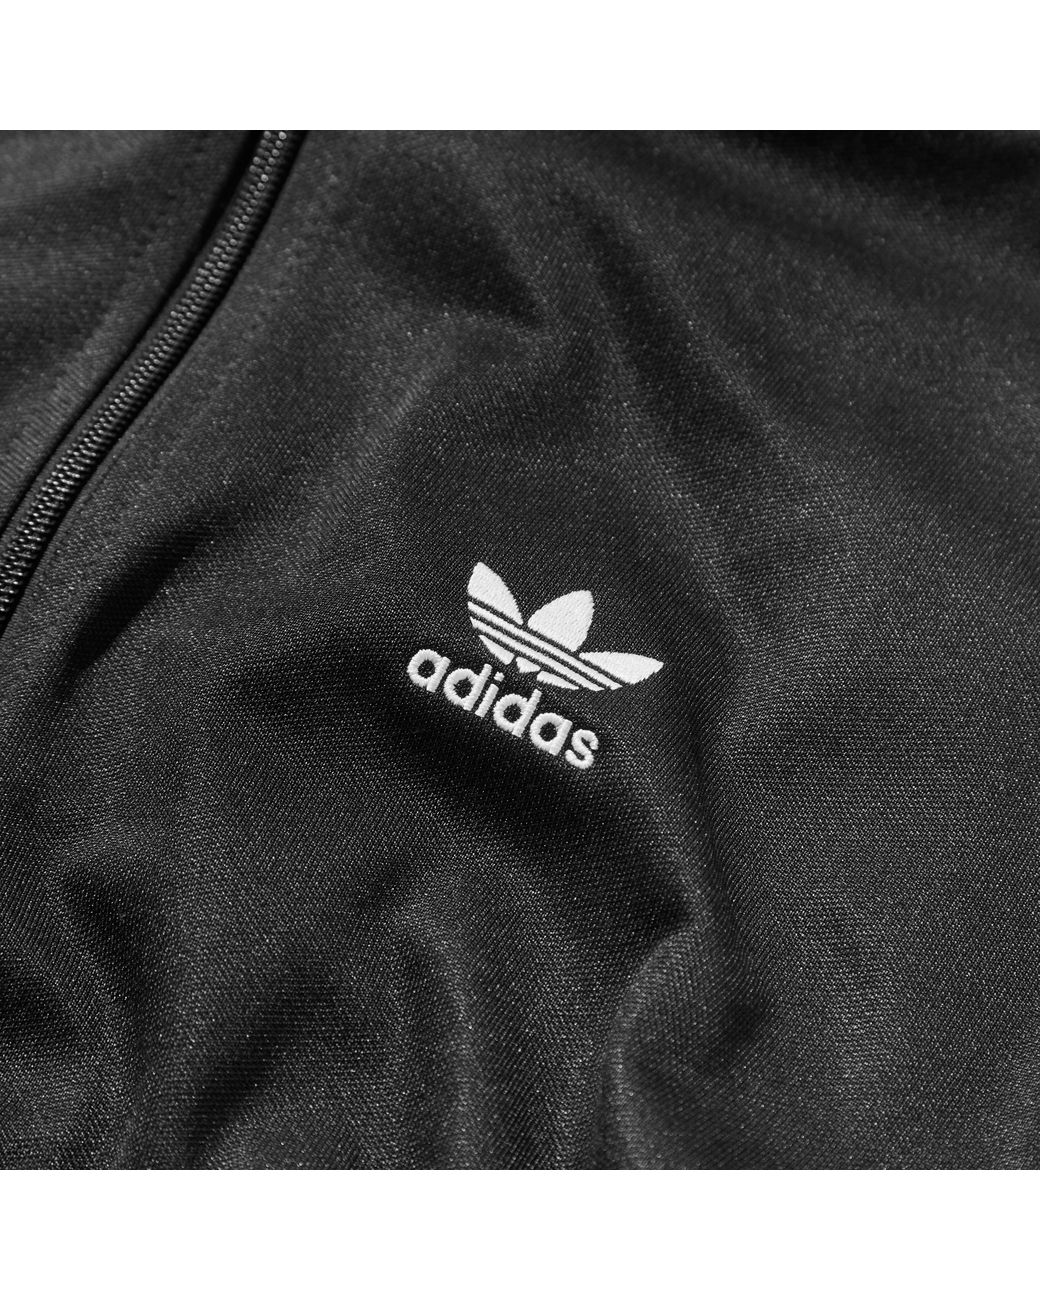 adidas Originals Adicolor Classics Beckenbauer Primeblue Track Top in Black  for Men | Lyst